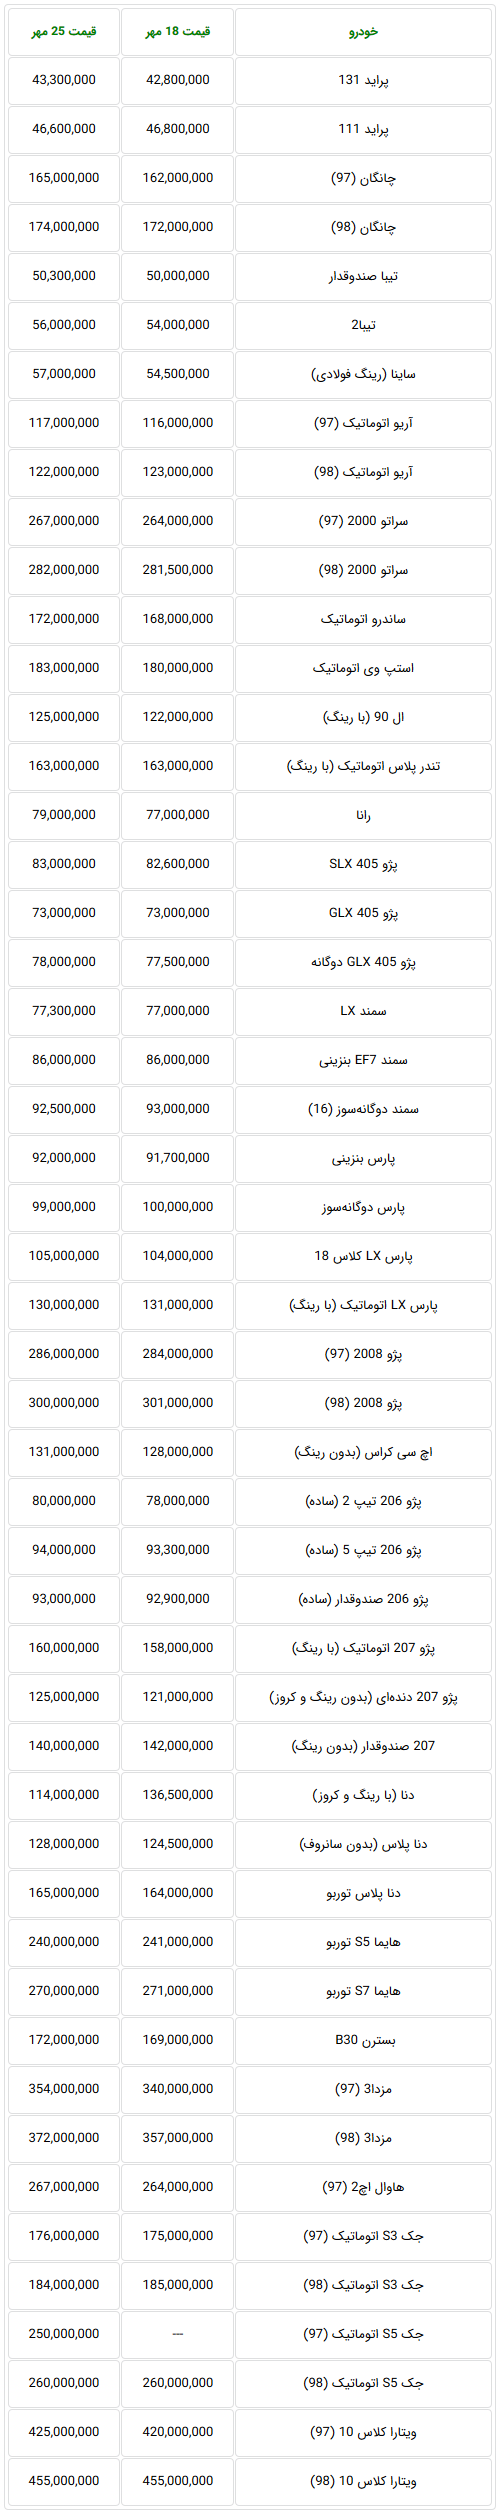 جدول آخرین وضعیت قیمت خودروهای داخلی در هفته ای که گذشت-28 مهر 98.png